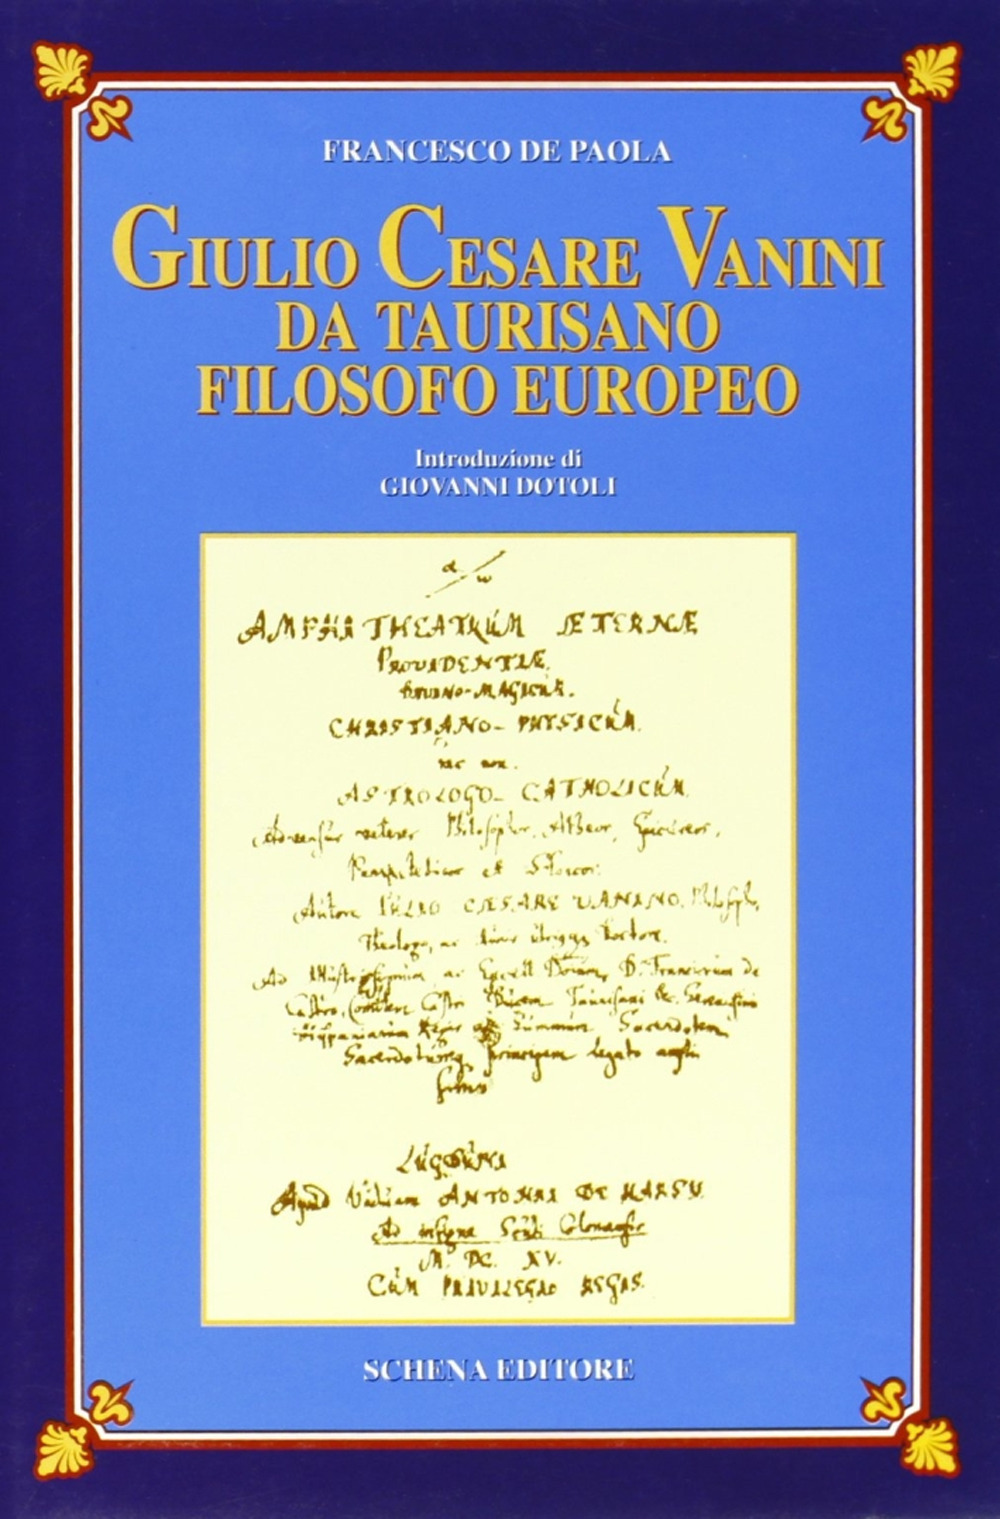 Giulio Cesare Vanini da Taurisano filosofo europeo